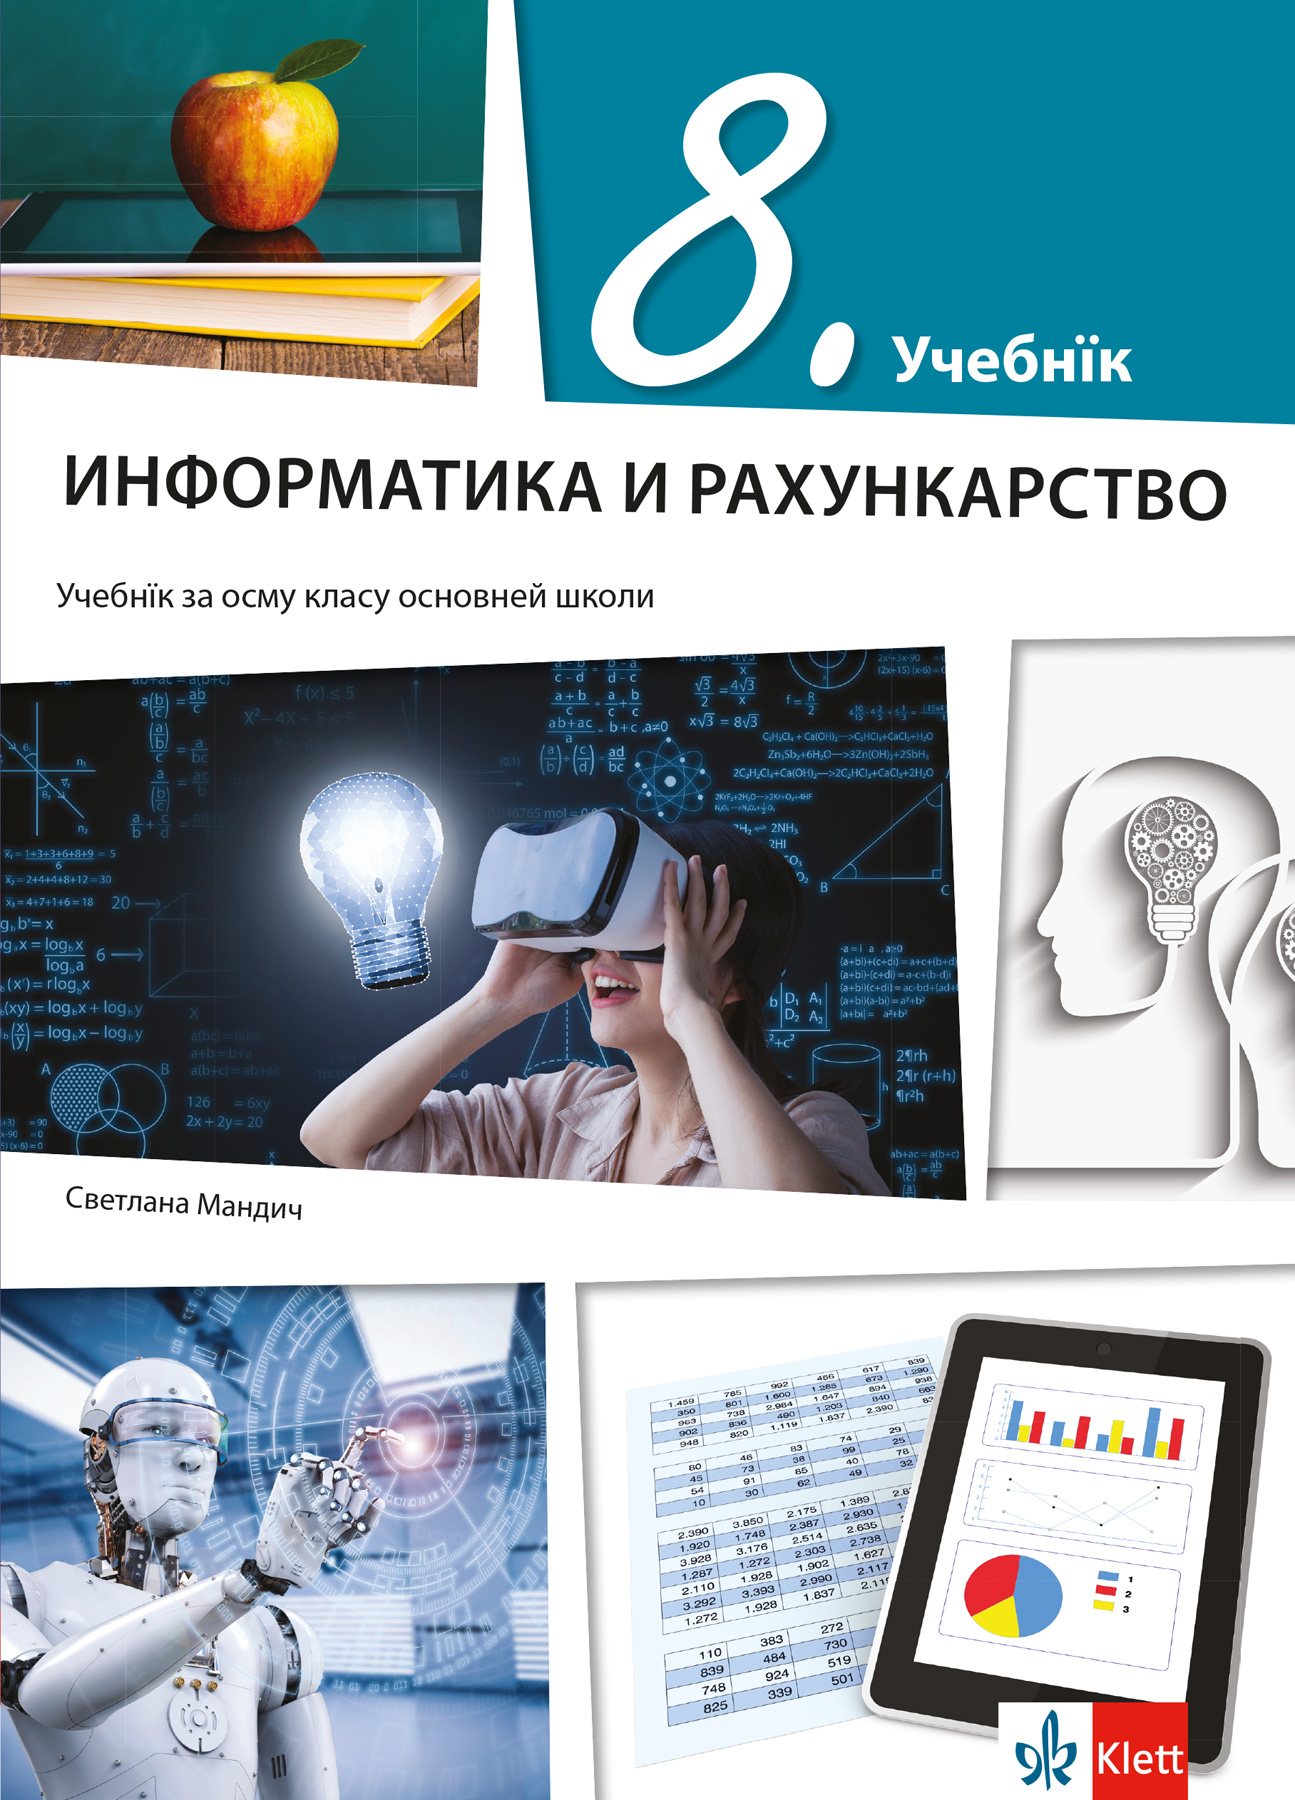 Информатика и рачунарство 8, уџбеника за осми разред на русинском језику